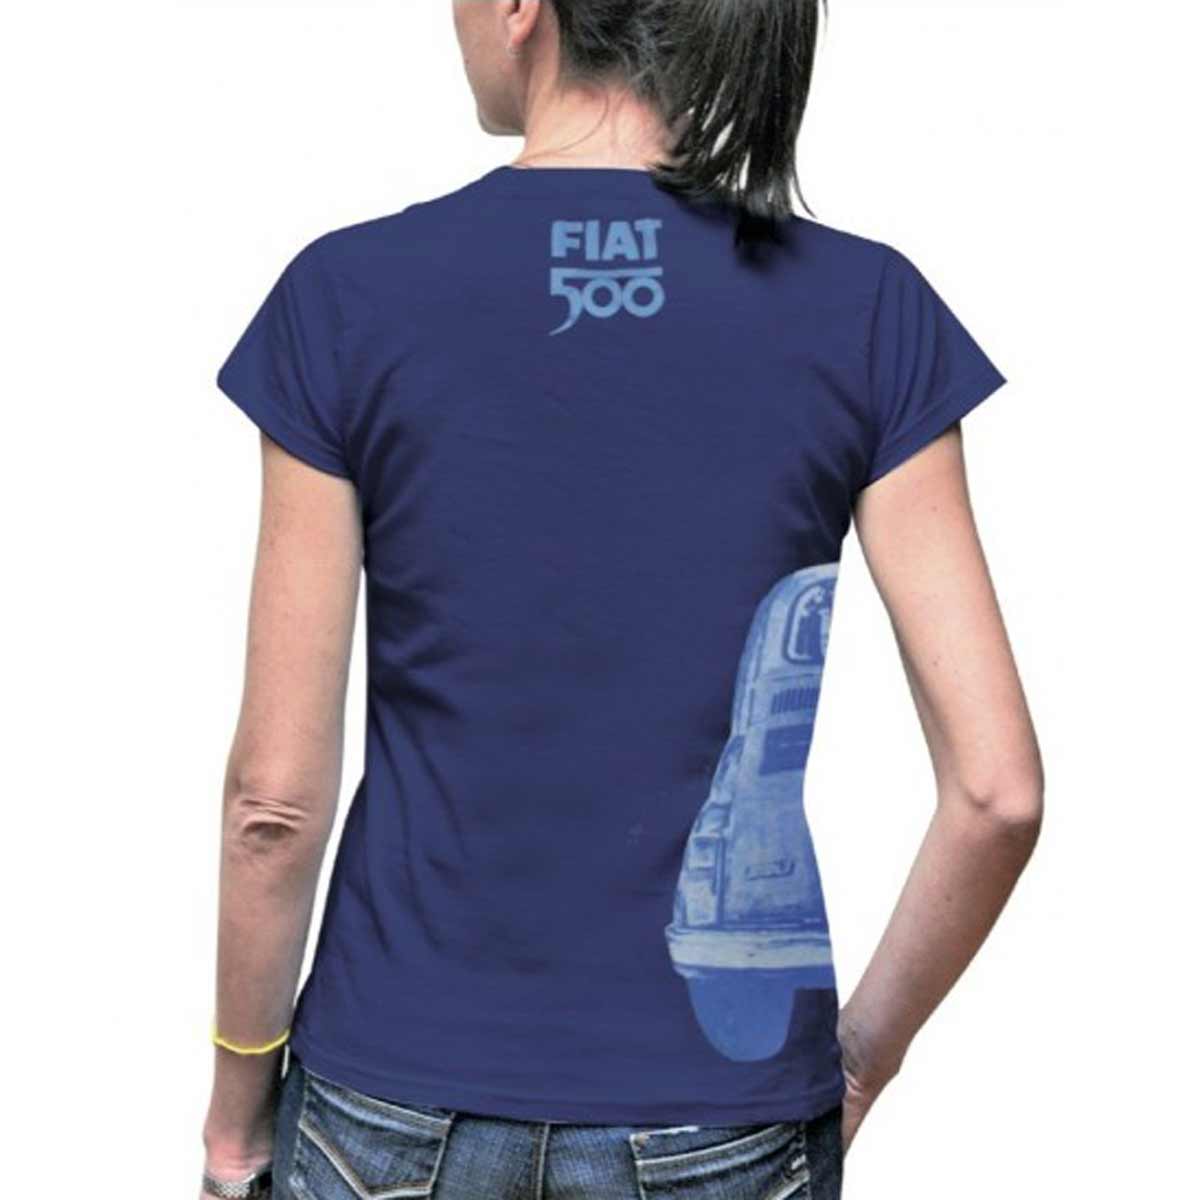 Tee-shirt femme Fiat 500 bleu